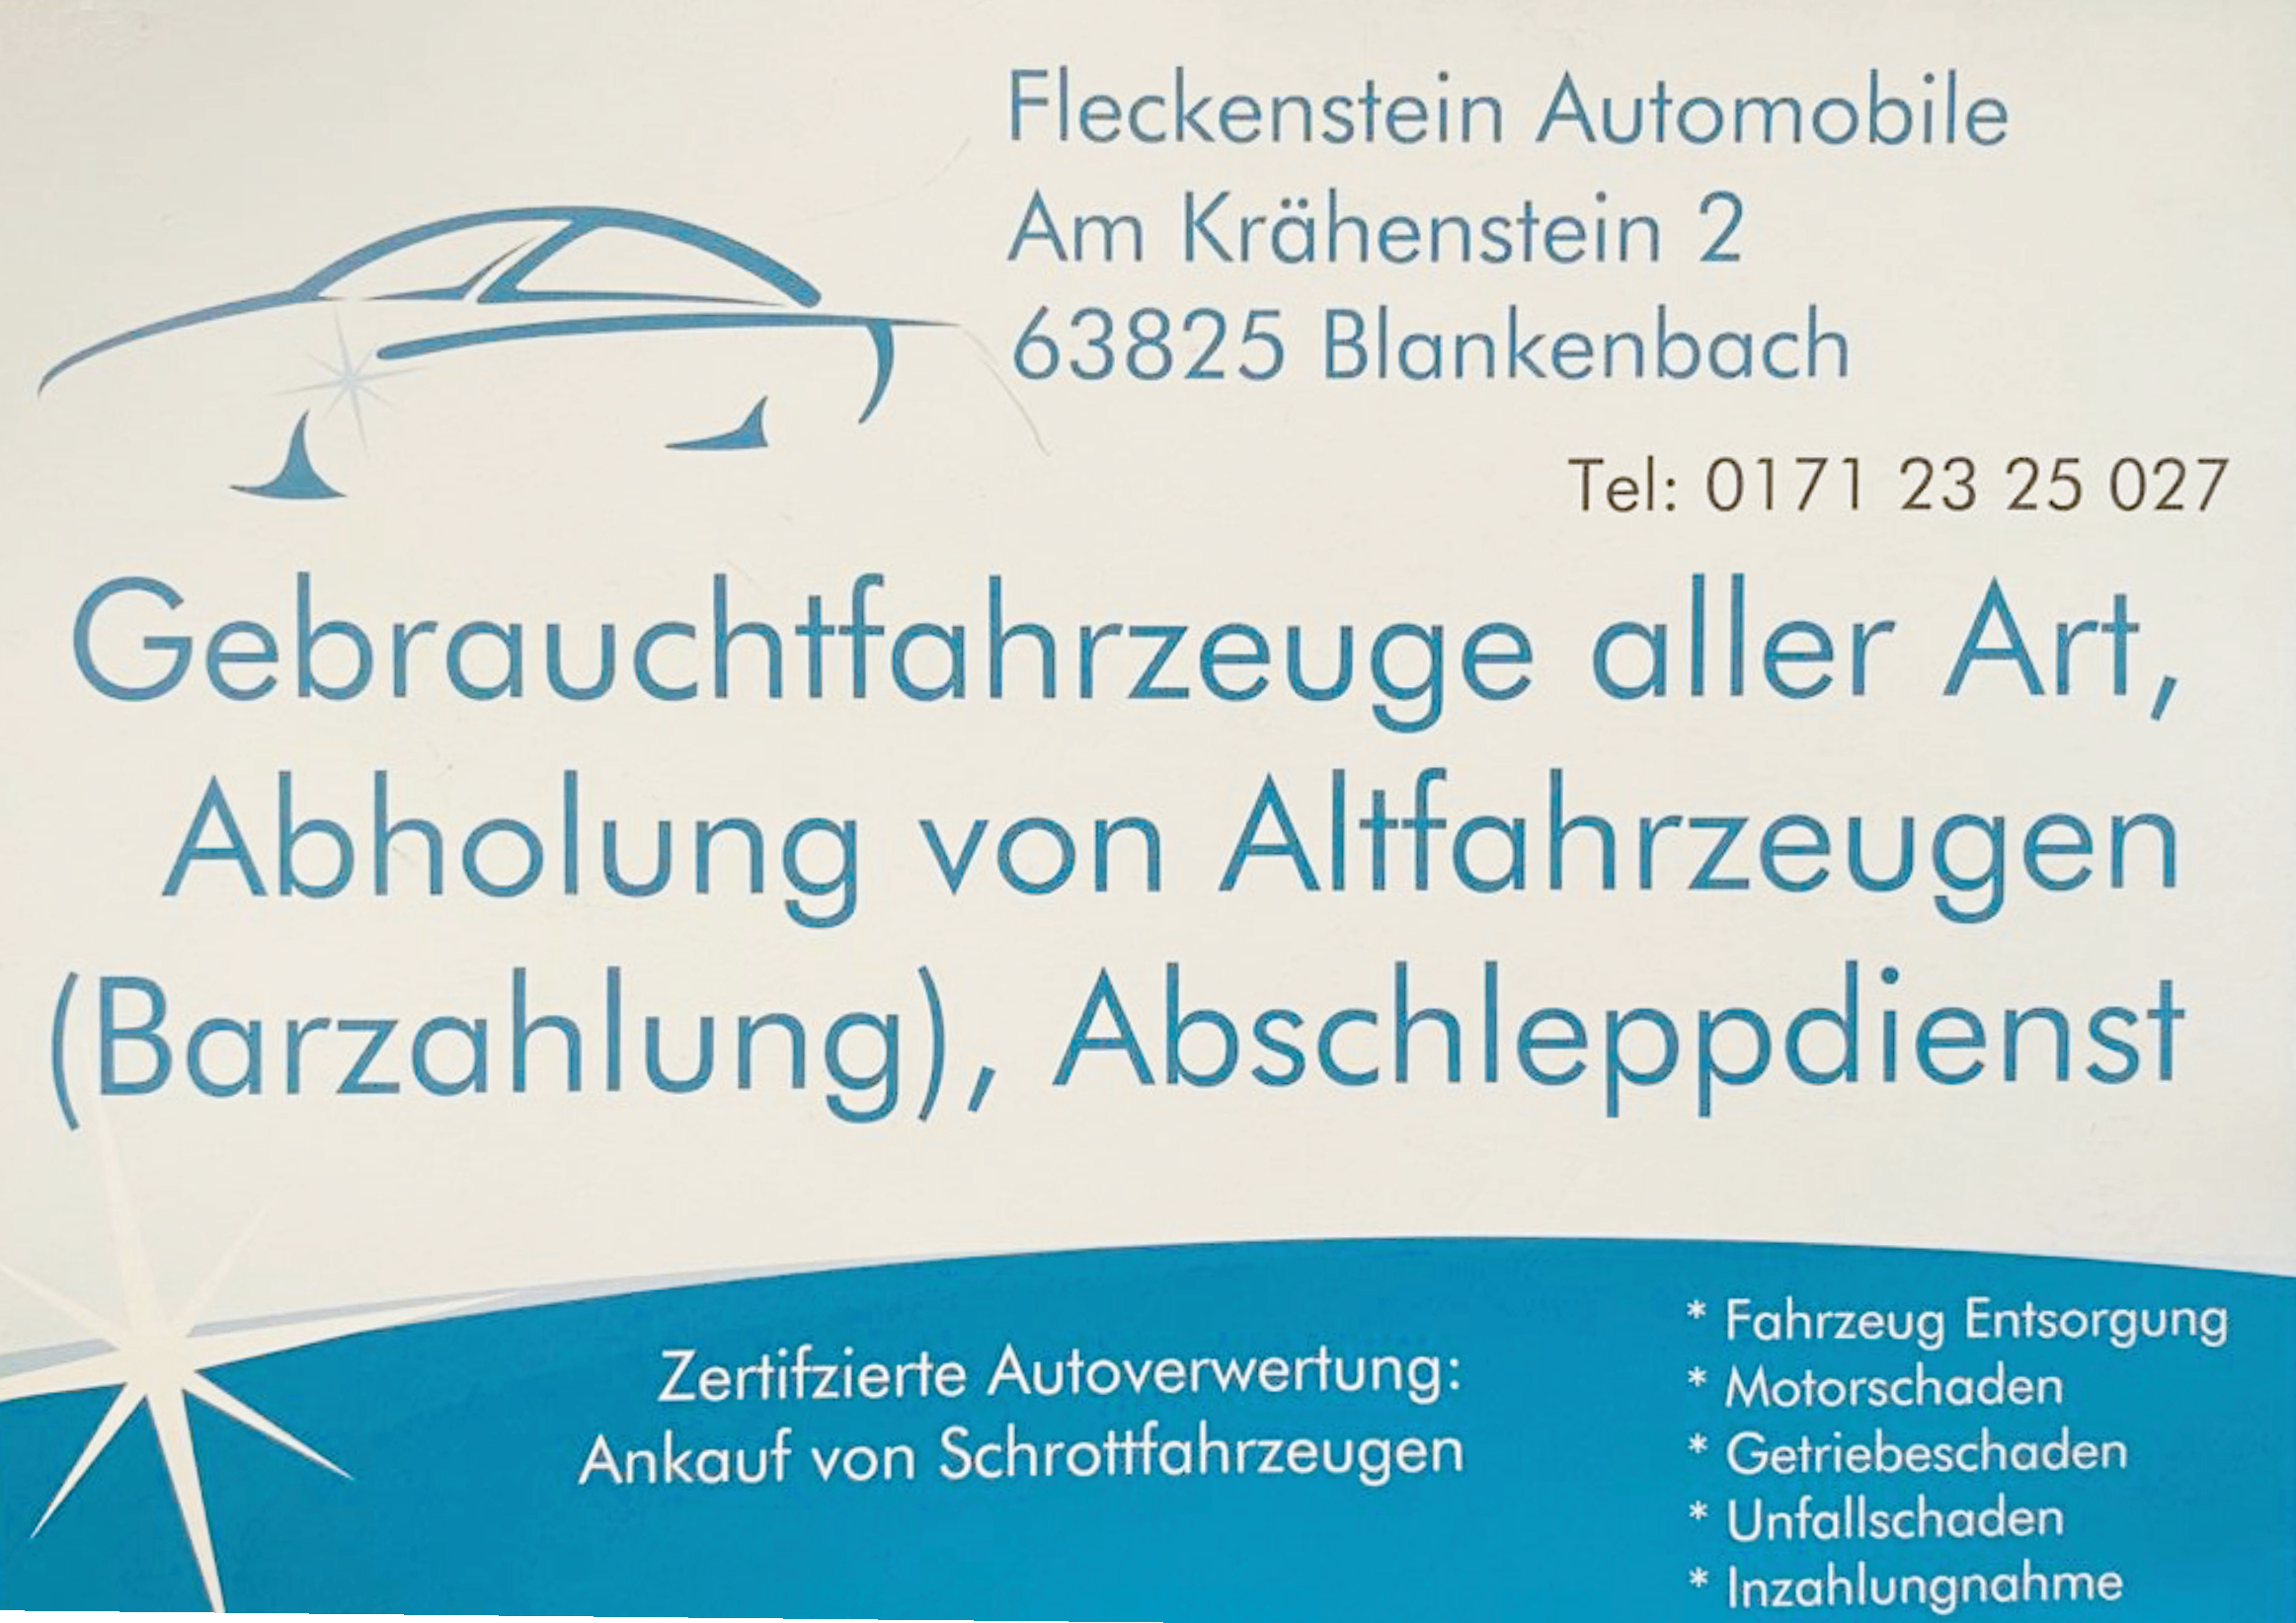 Fleckenstein Automobile